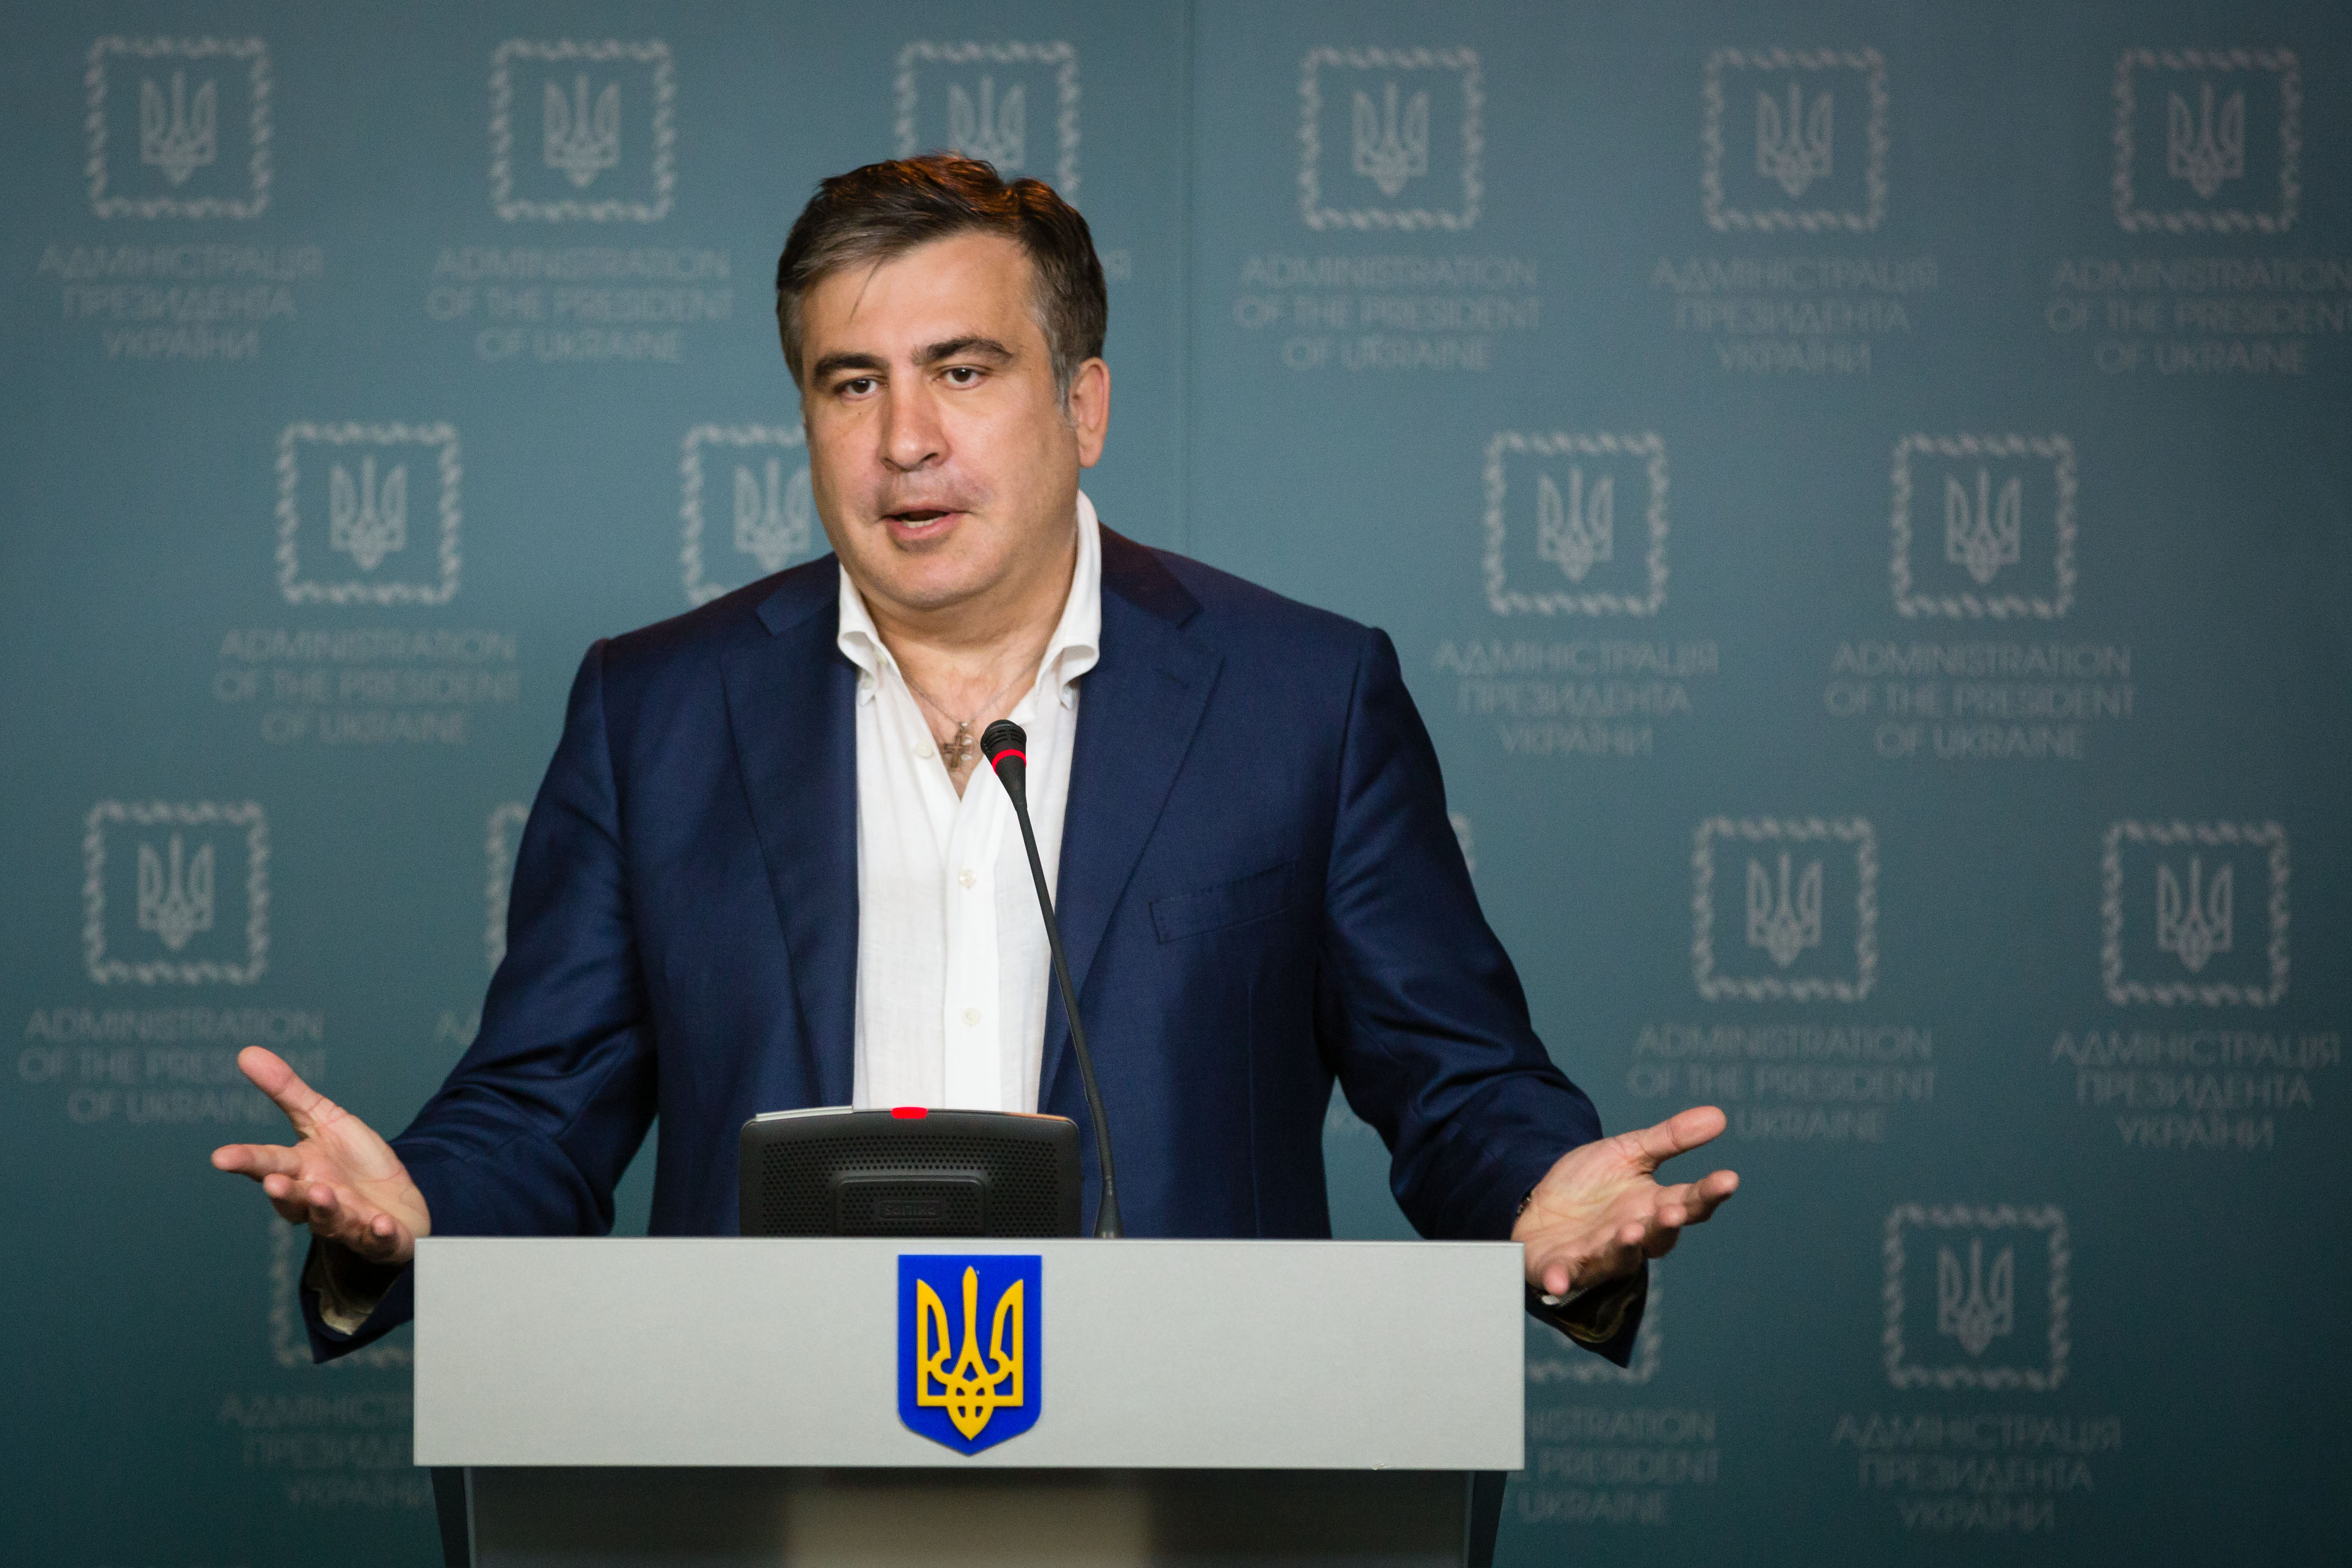 "Я буду их мочить уже из Киева" - Саакашвили пообещал разоблачать коррупционные схемы ОПЗ из столицы